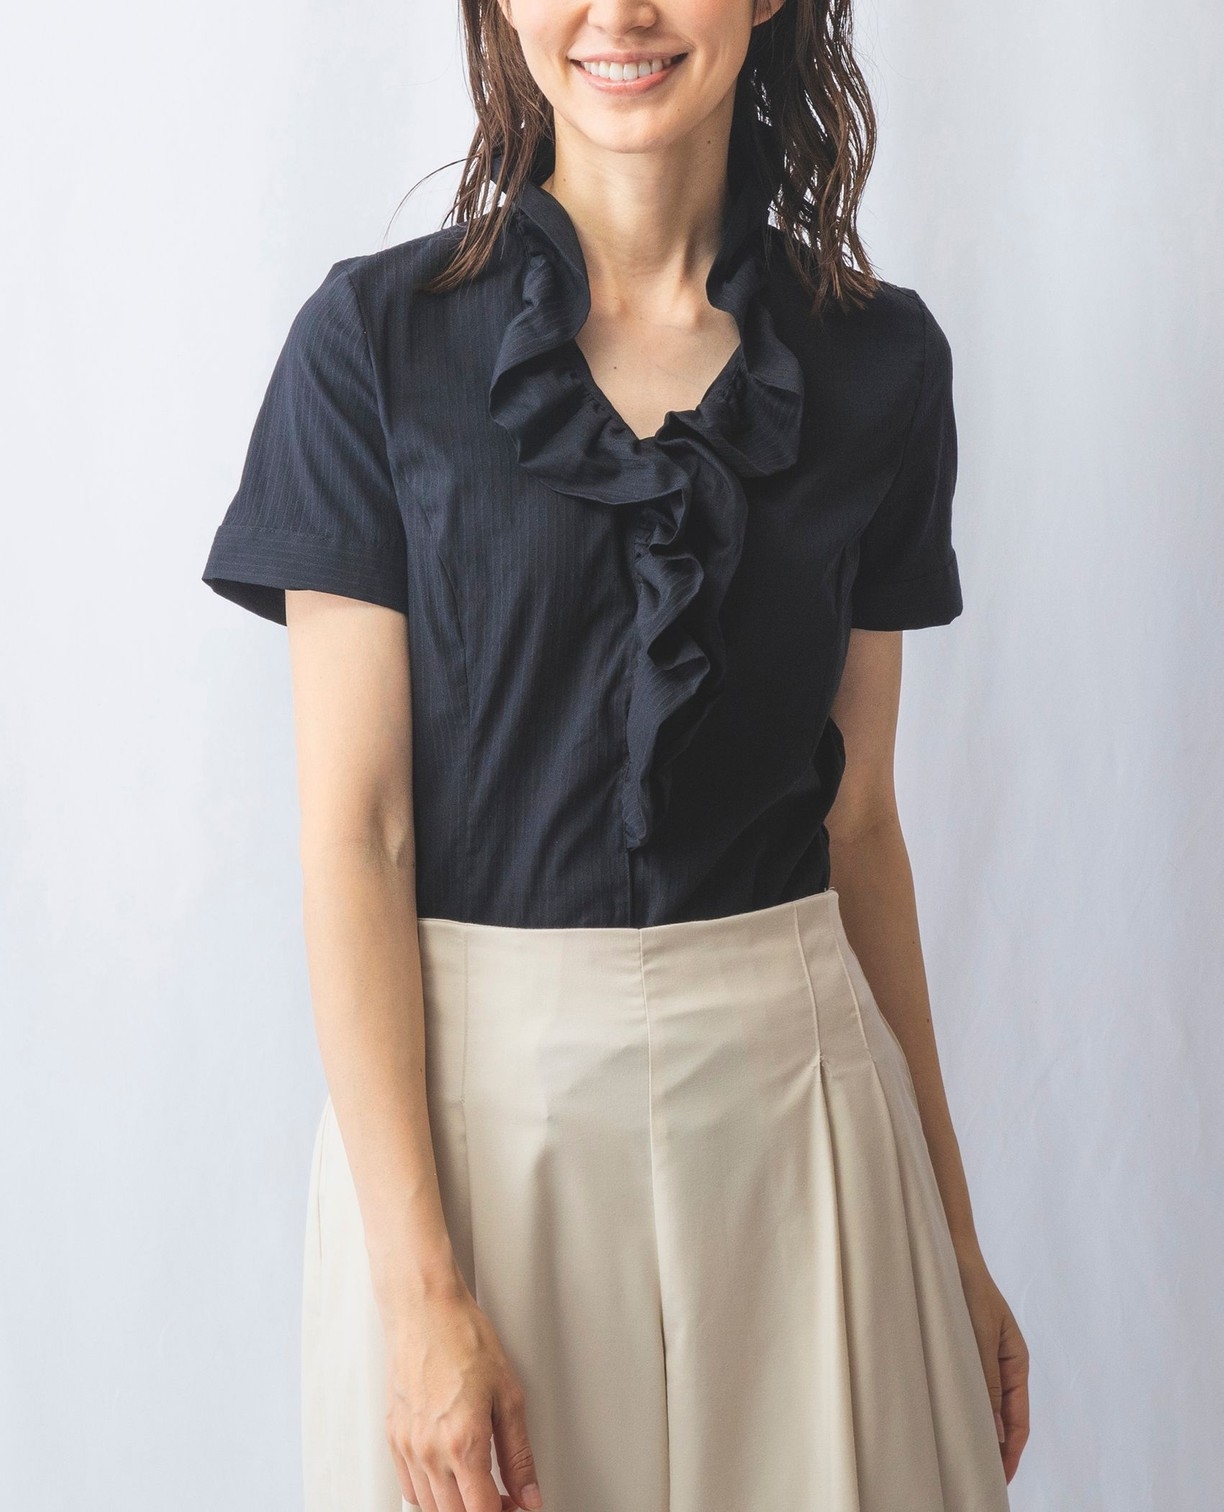 ストレッチストライプフリル衿半袖シャツ(2(L)11号 ホワイト): ナラ